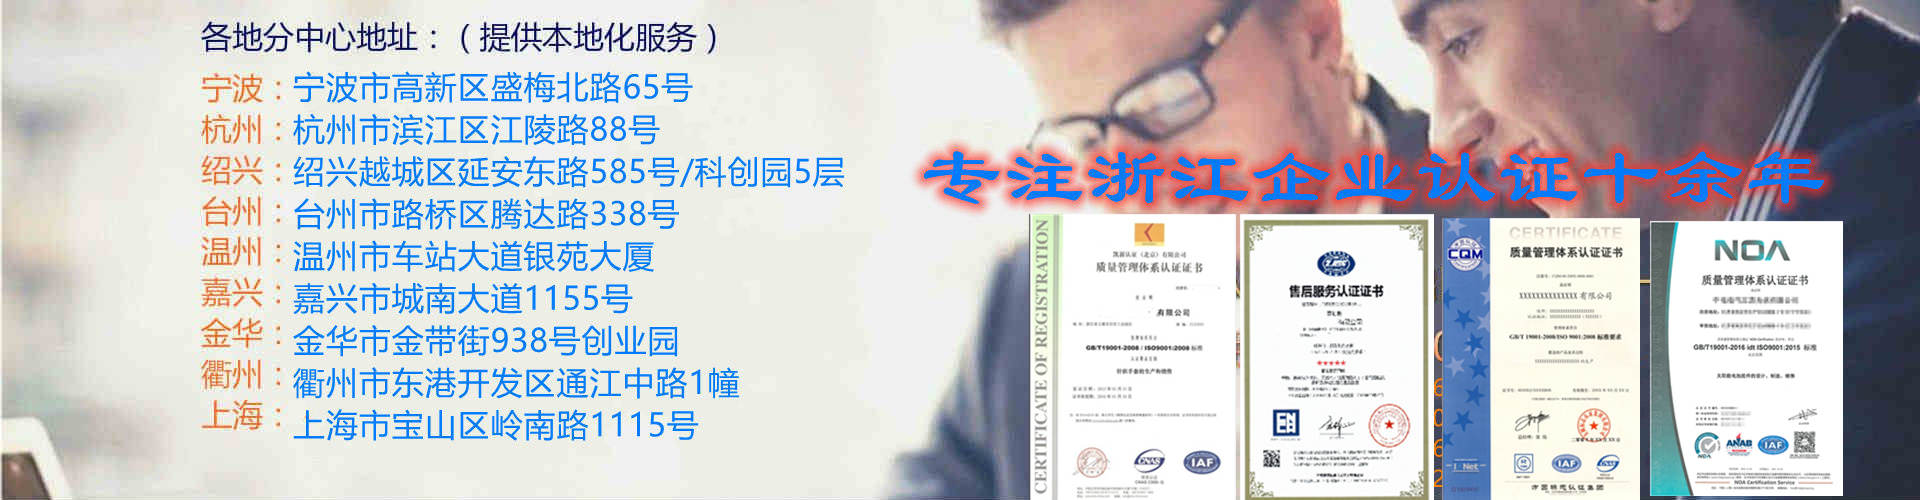 仙居申请ISO9000认证9001,桐乡诚信企业